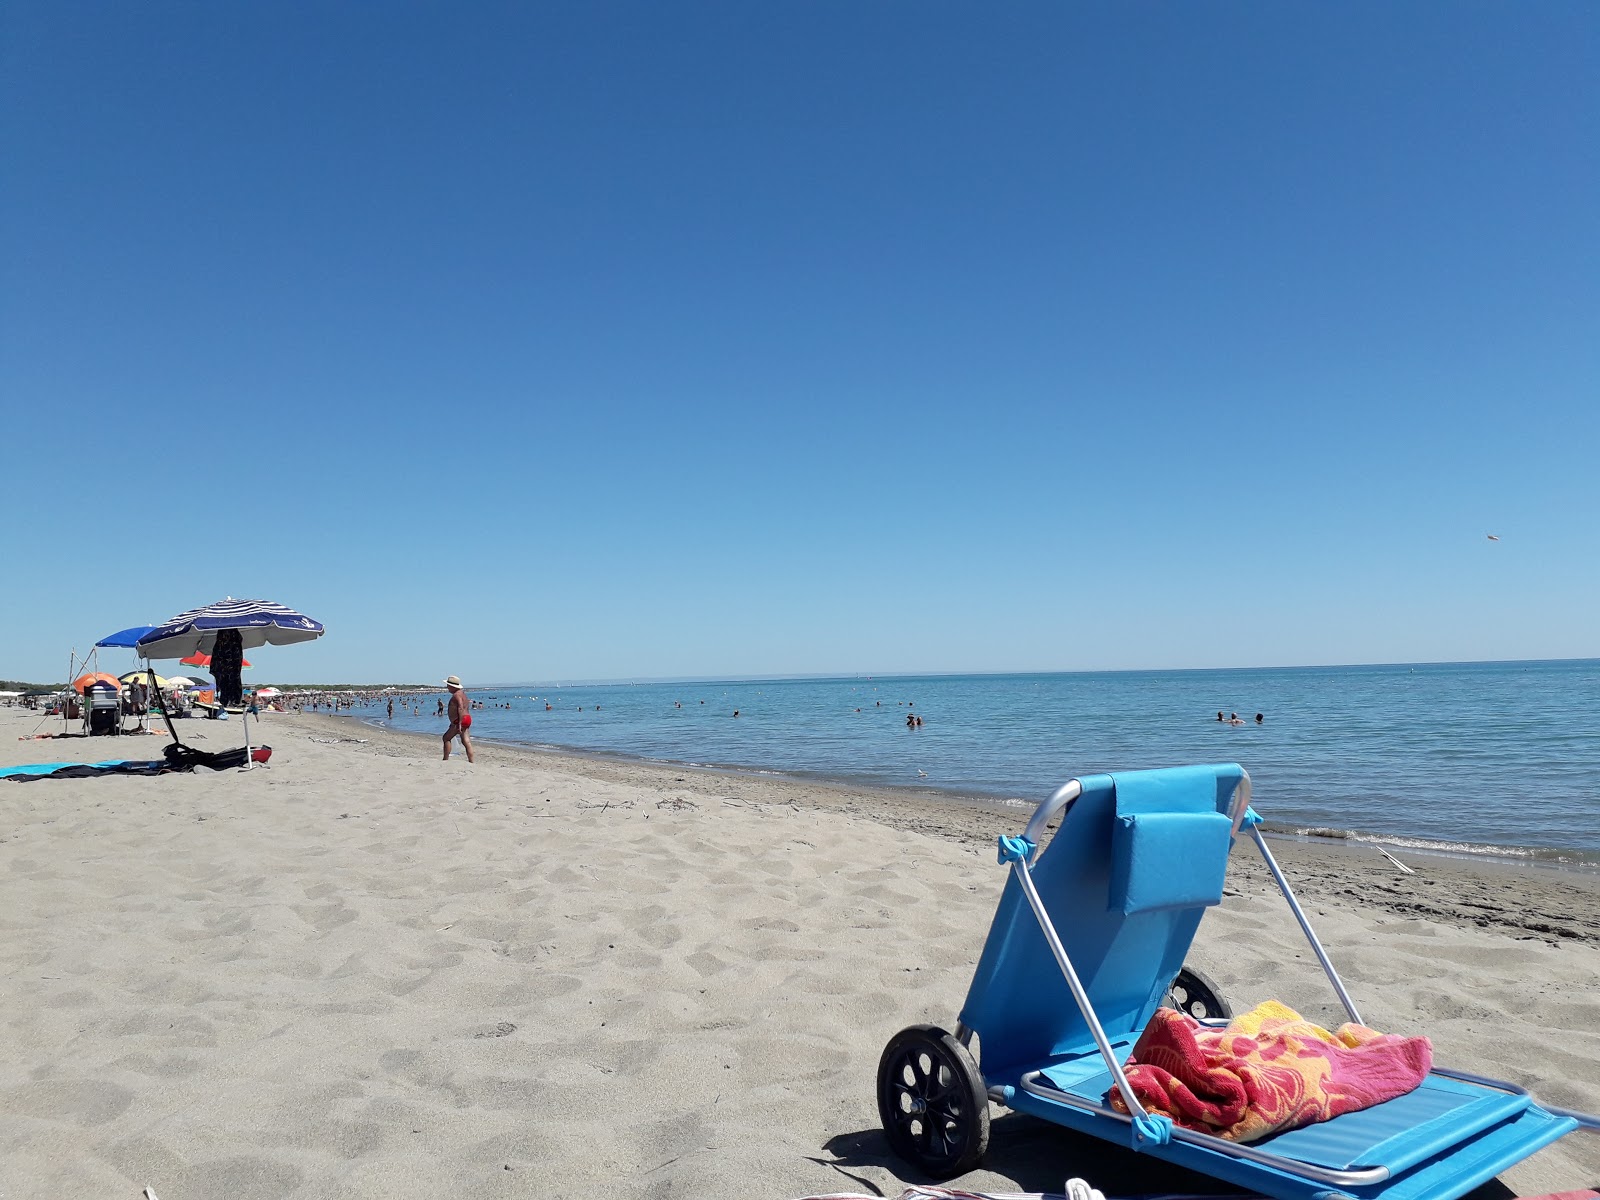 Lido di Scanzano beach'in fotoğrafı düz ve uzun ile birlikte